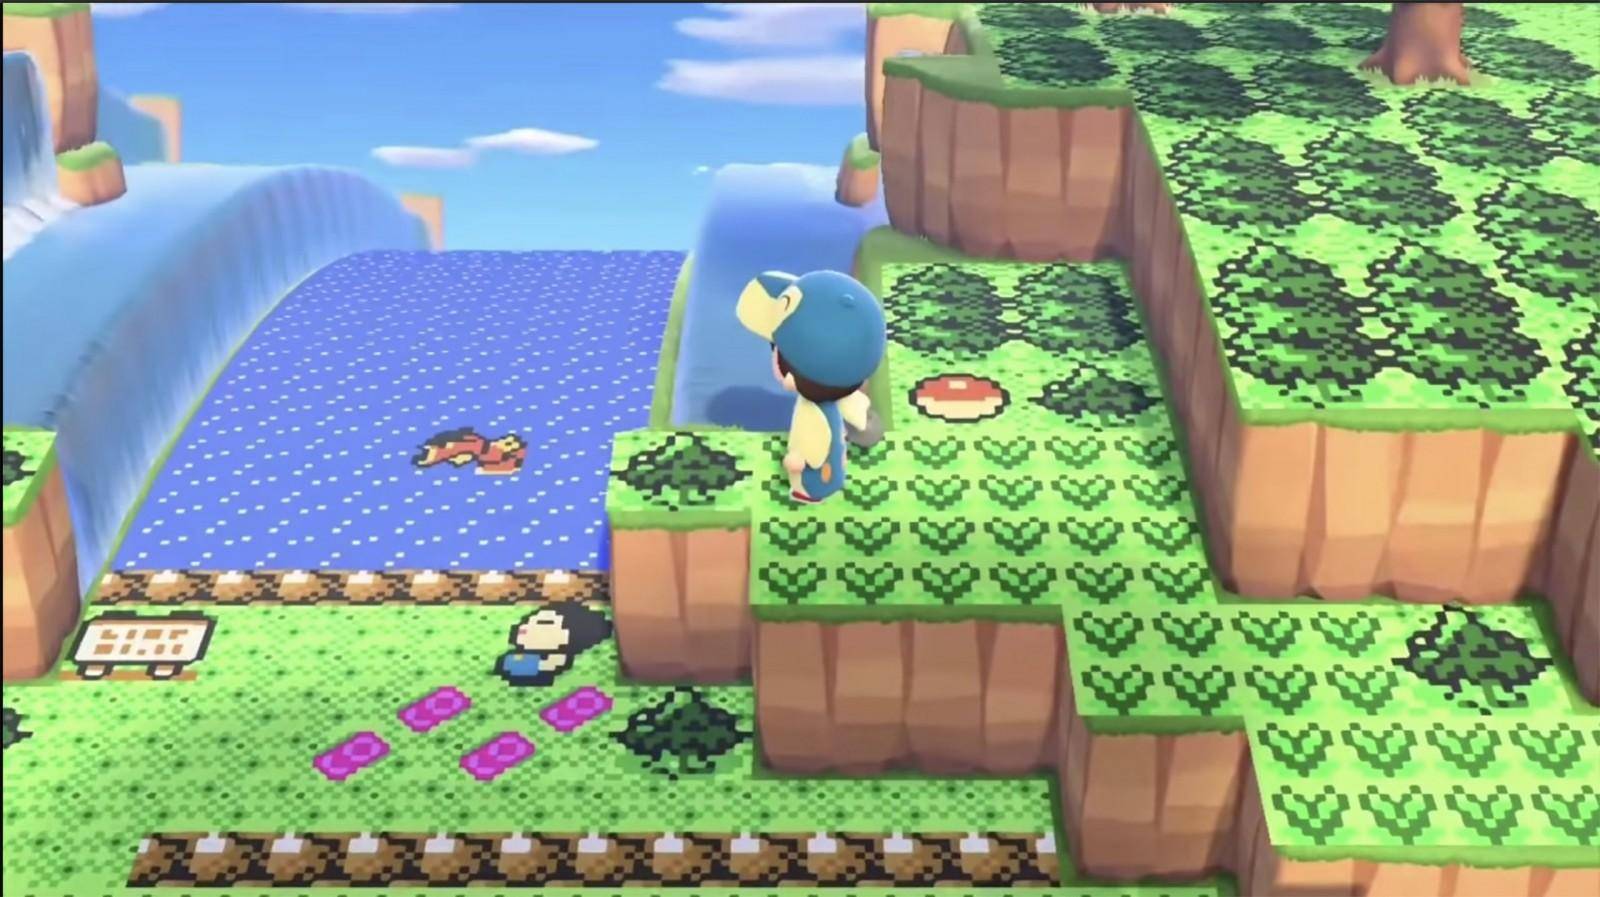 Animal Crossing New Horizons es el último lanzamiento de esta franquicia. En esta versión hemos podido disfrutar de más opciones para personalizar nuestro estilo de vida. ¿Llegará Pokémon a la isla? El diseñador fentoshops nos muestra.